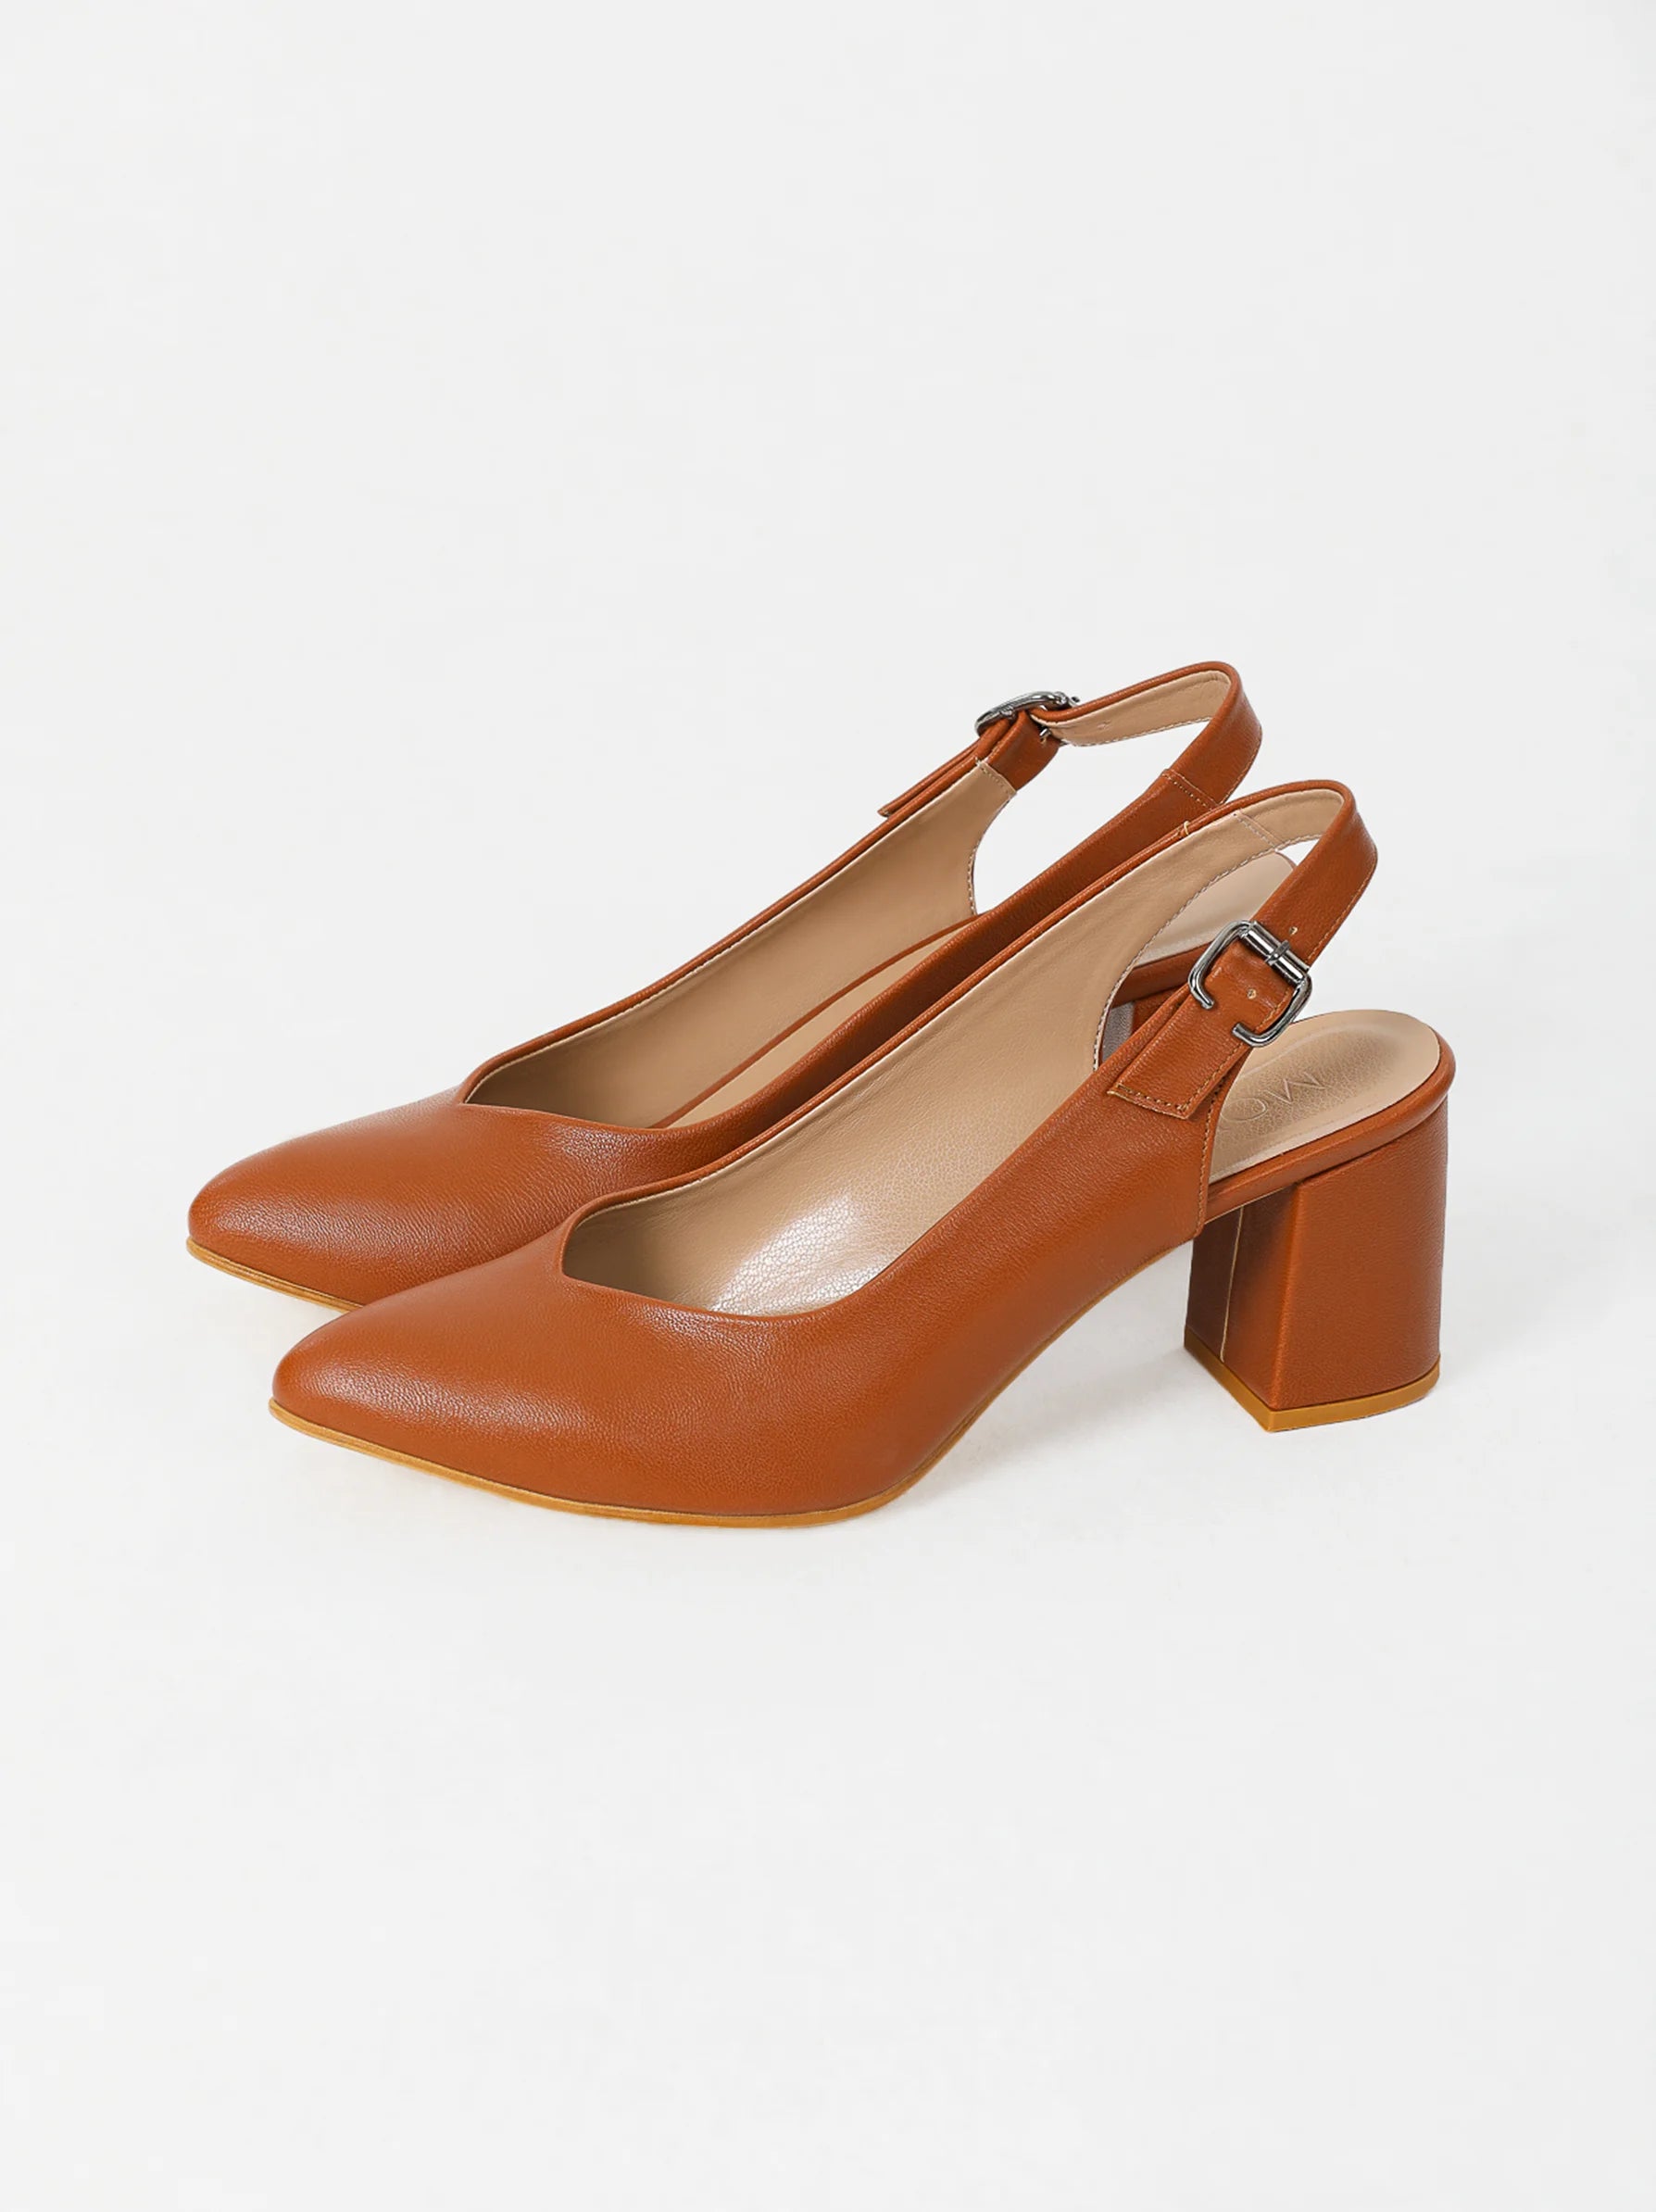 Brown low heel stiletto | Comfortable heel dress shoe | LT zapatos